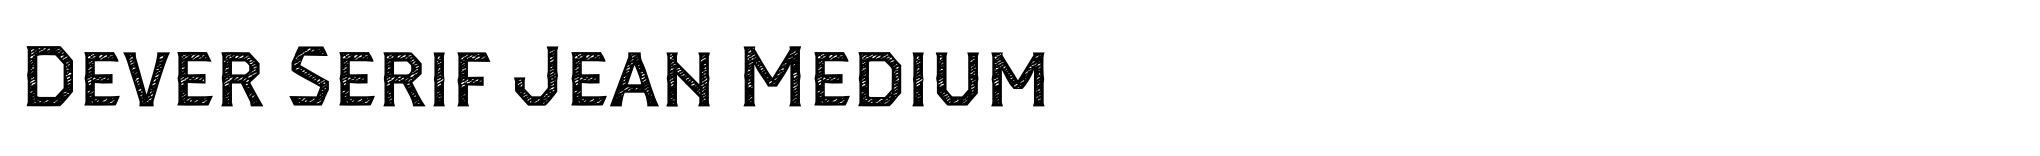 Dever Serif Jean Medium image